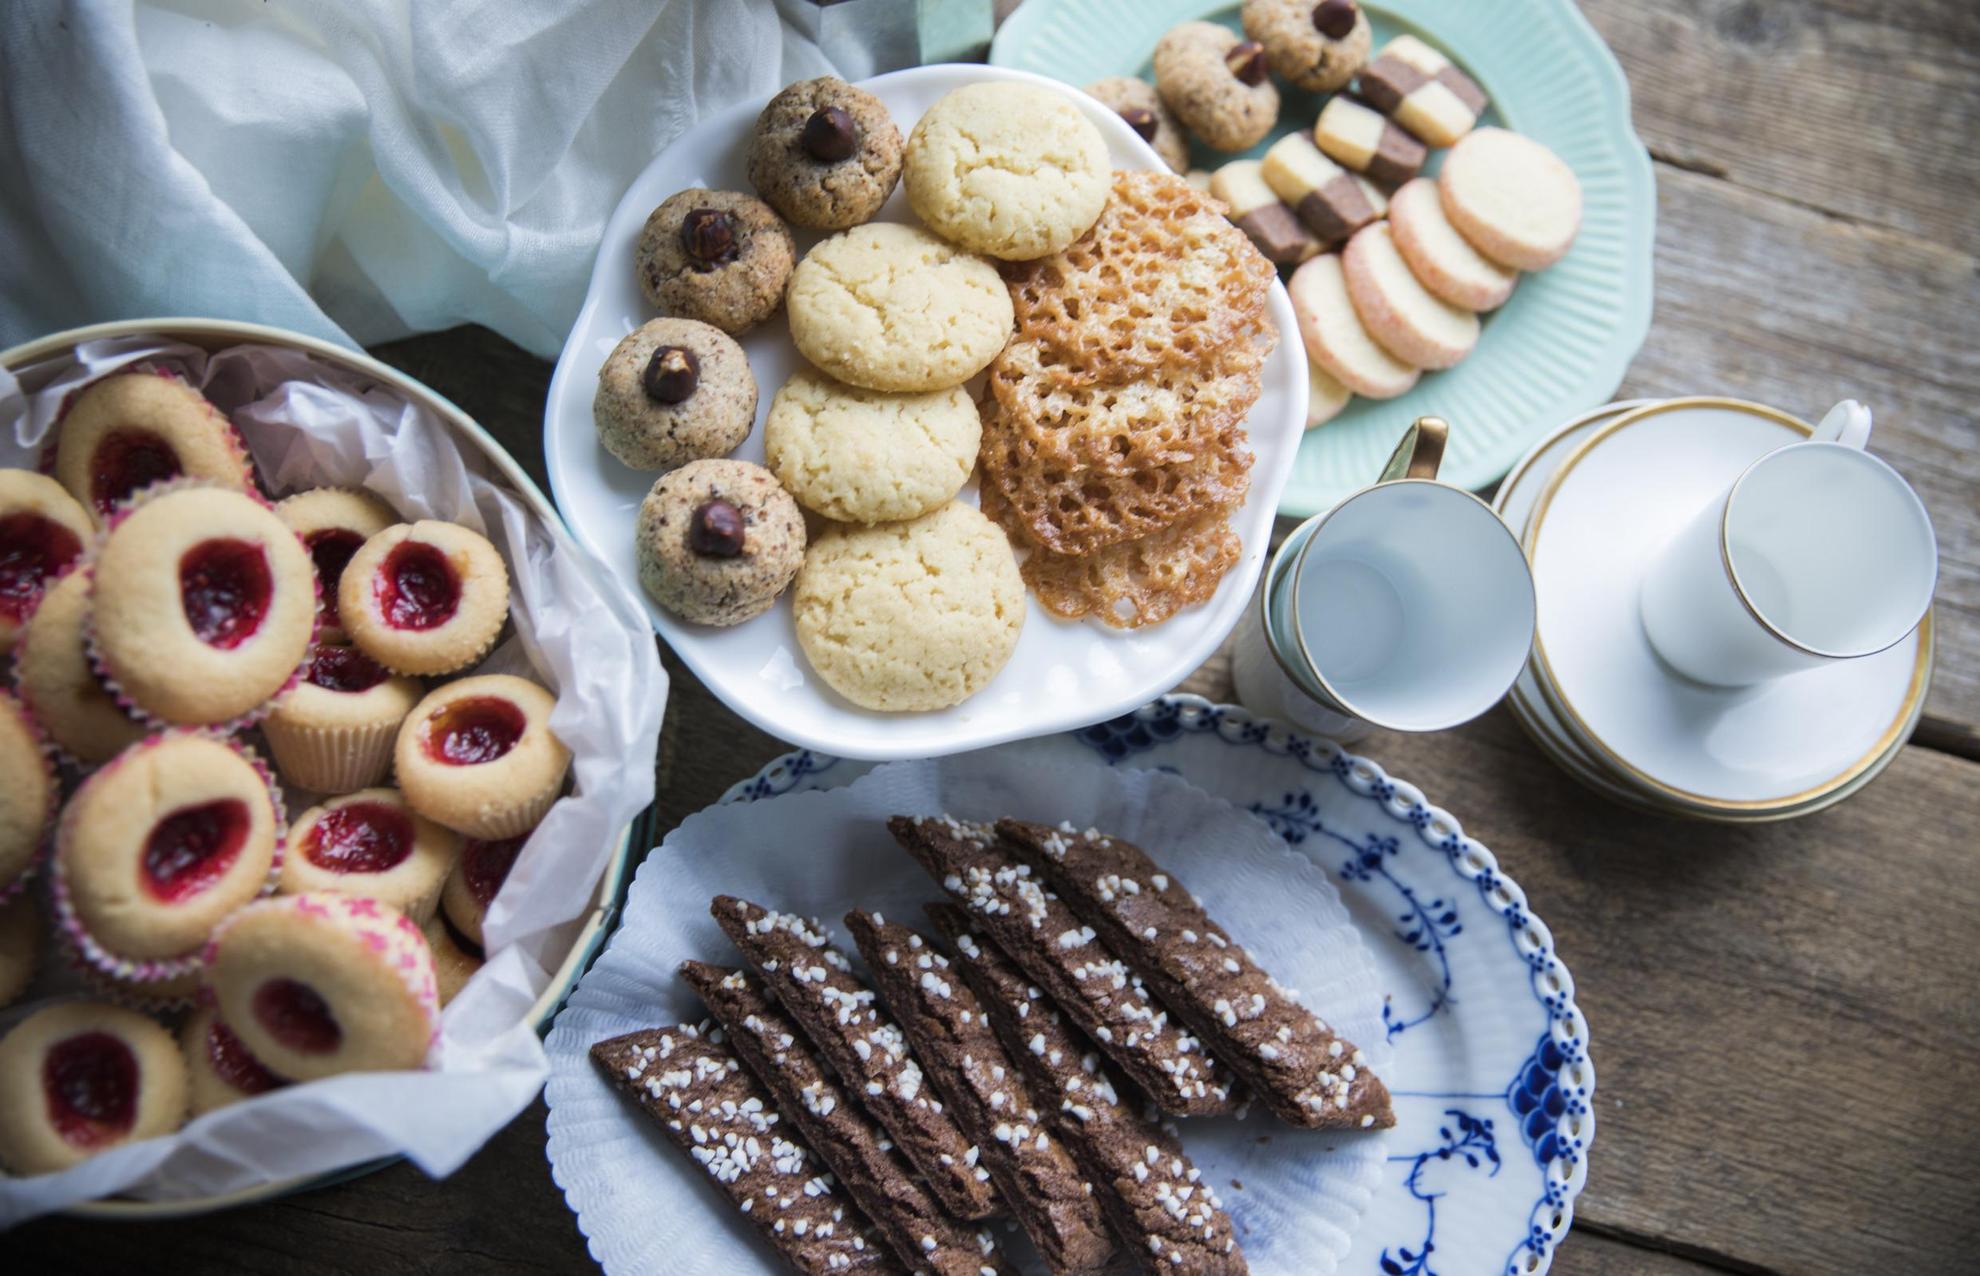 Sieben Arten von schwedischen Keksen liegen auf mehreren Tellern verteilt.